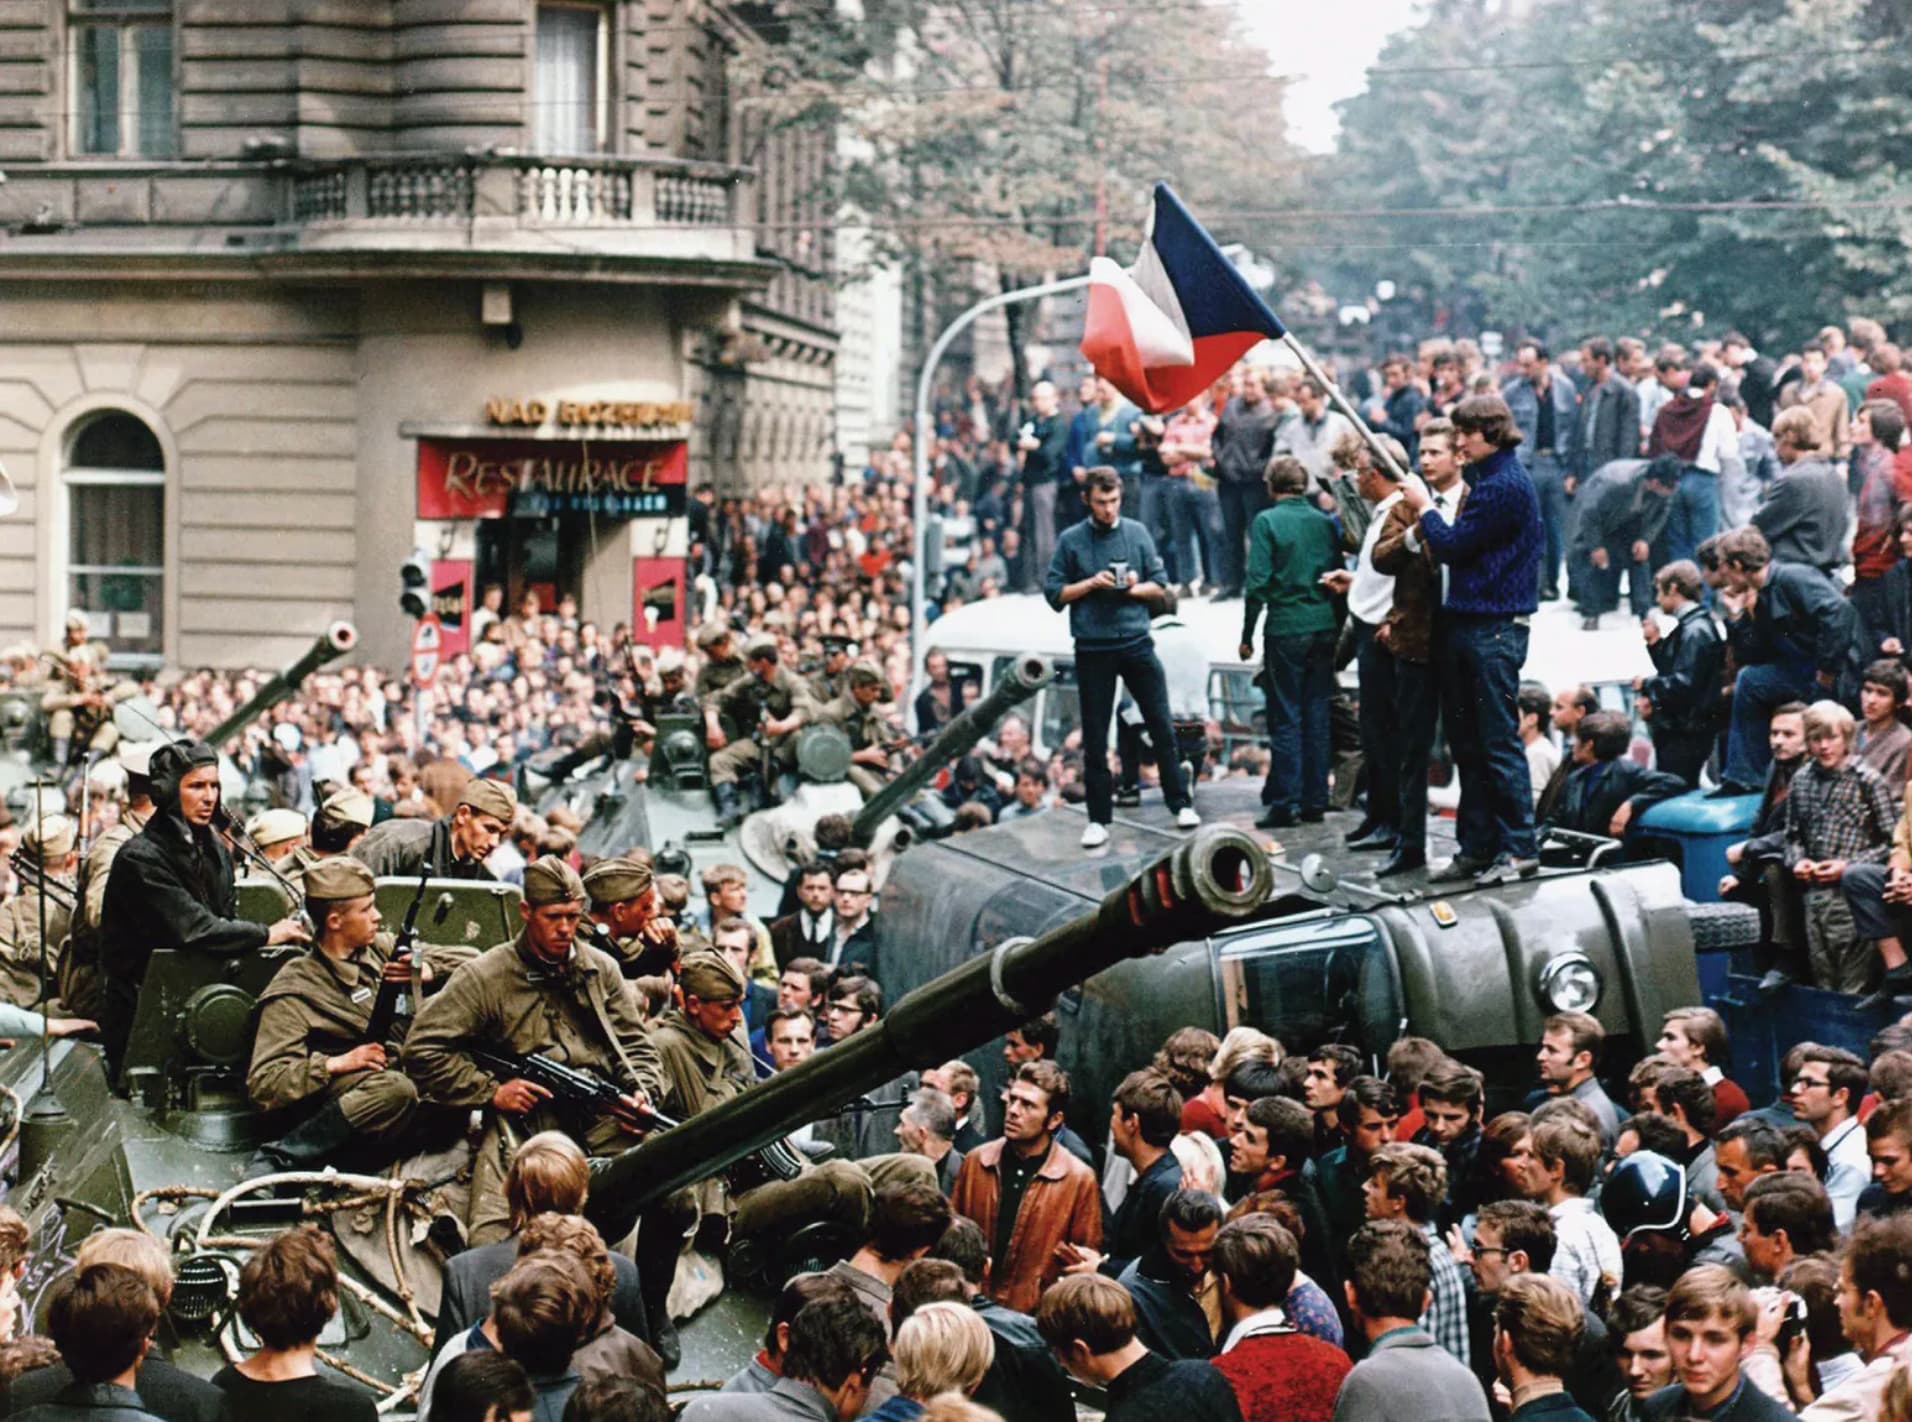 fall of communism in czechoslovakia